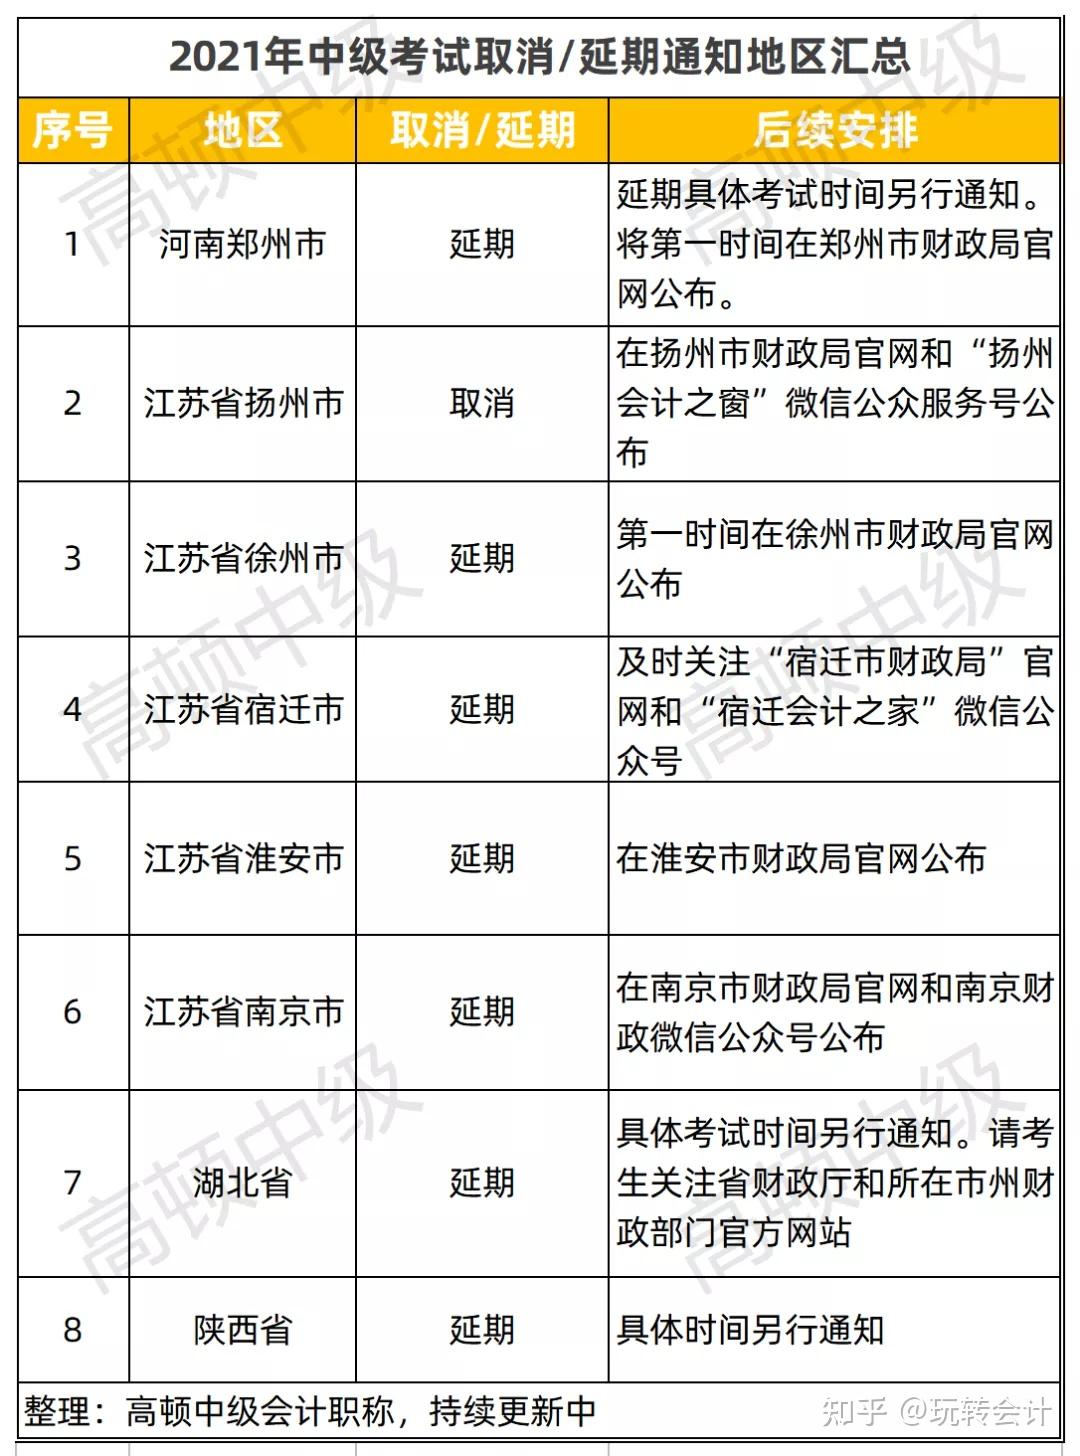 2,江苏徐州市财政局:中级考试延期举行另外,江苏又一地区也宣布侄级